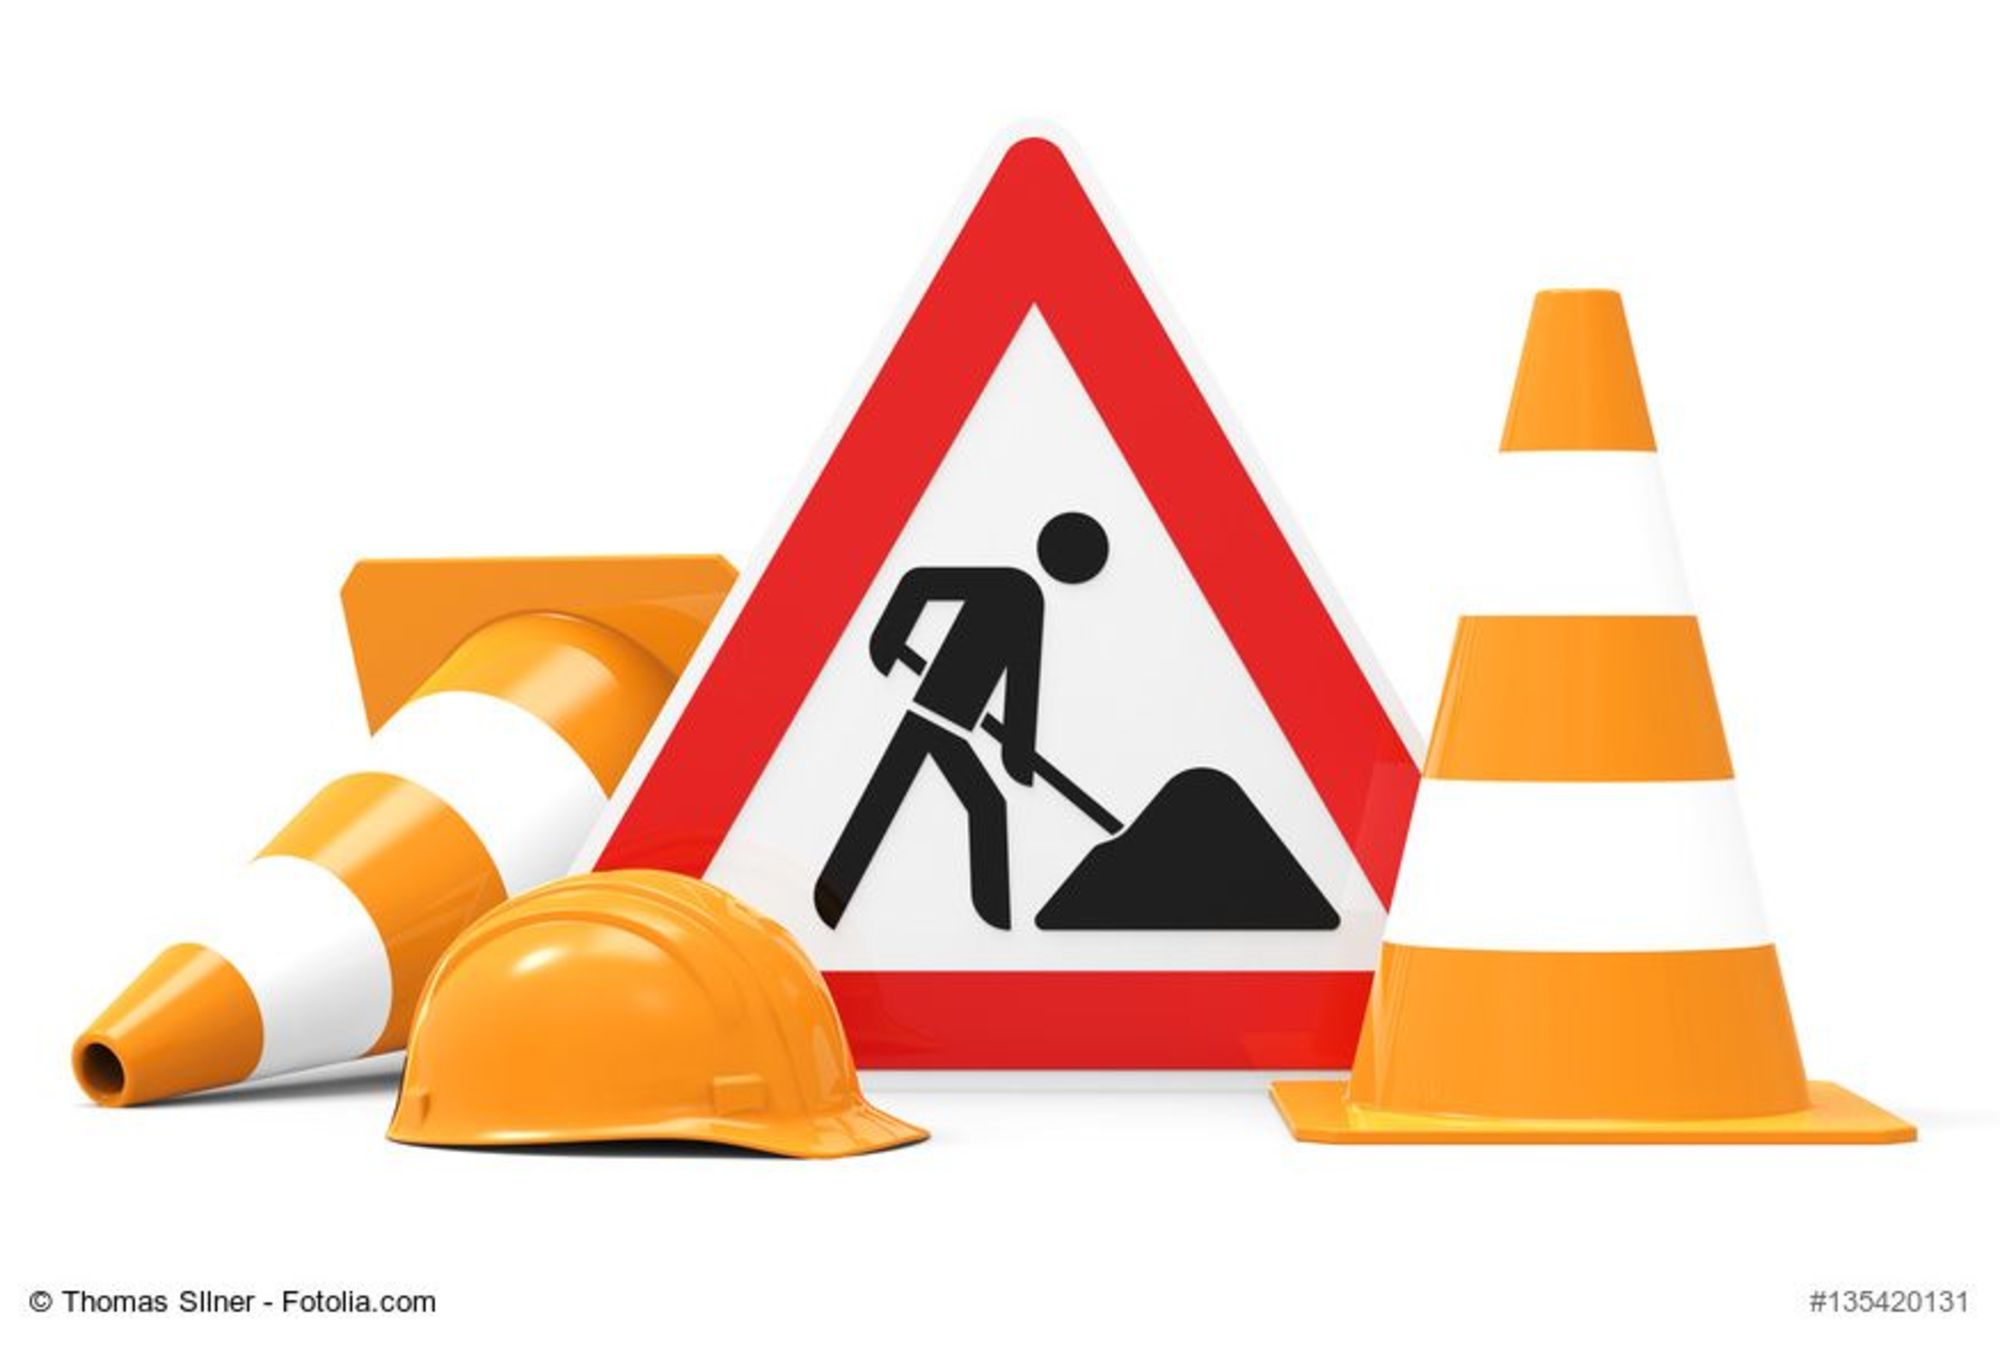 Landratsamt Schweinfurt - Verkehrsbehinderungen wegen Bauarbeiten ab 2. Juni